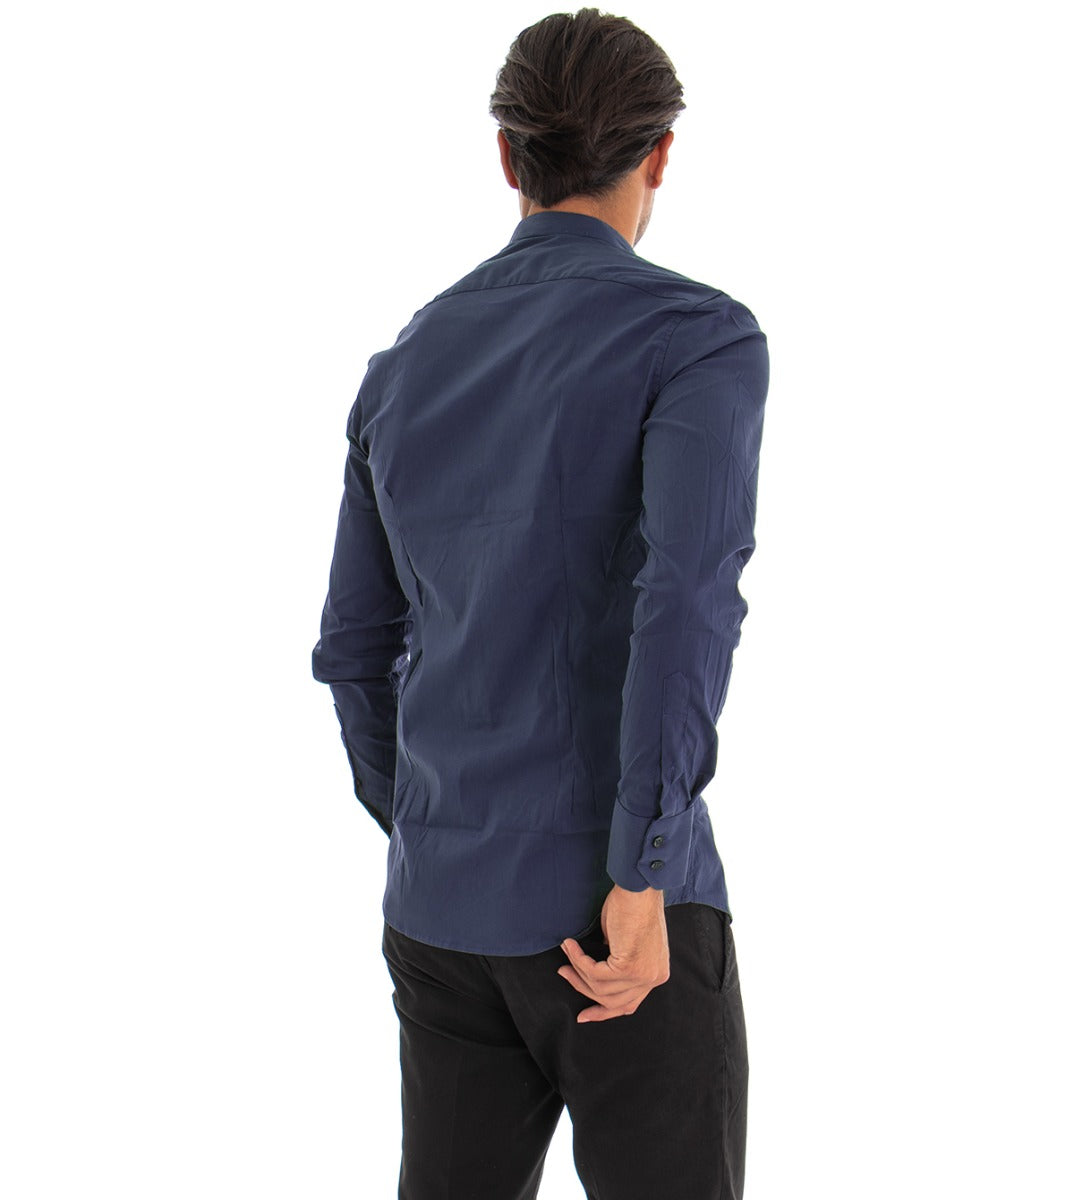 Camicia Uomo Collo Coreano Manica Lunga Slim Fit Basic Casual Cotone Blu GIOSAL-C1819A